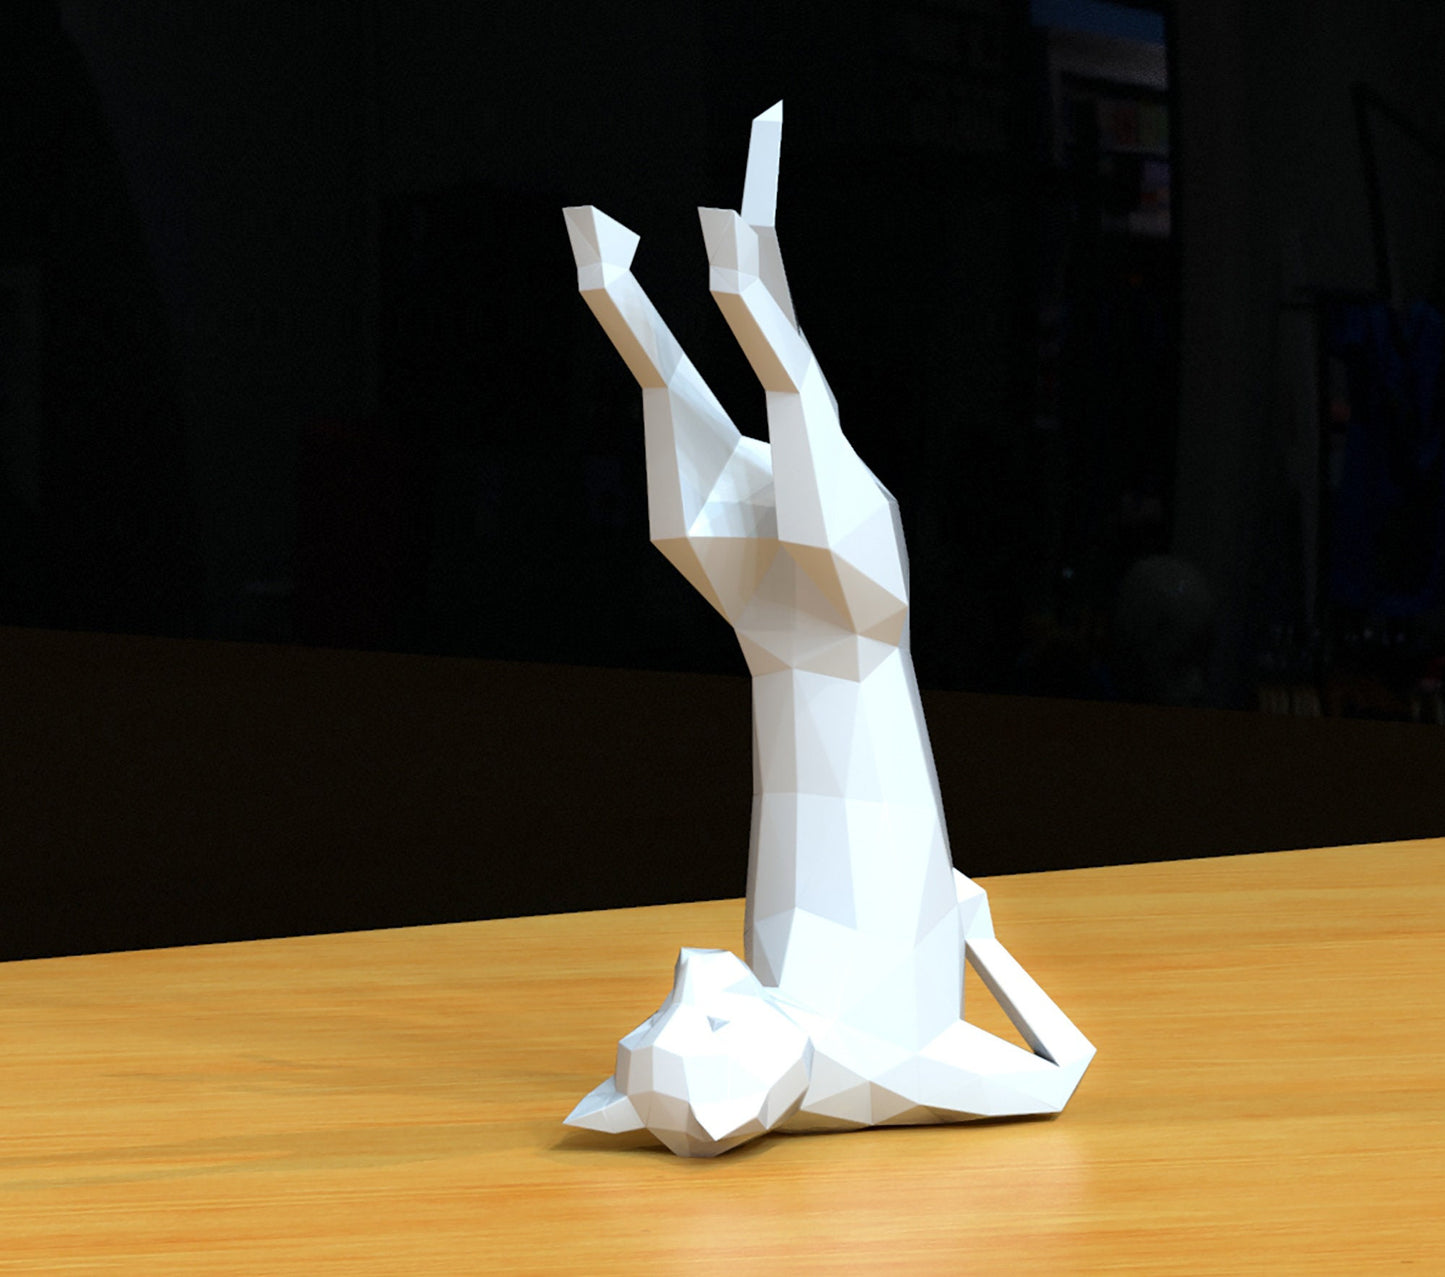 papercraft cat, yoga cat, paper sculpture cat, paper model, diy cat